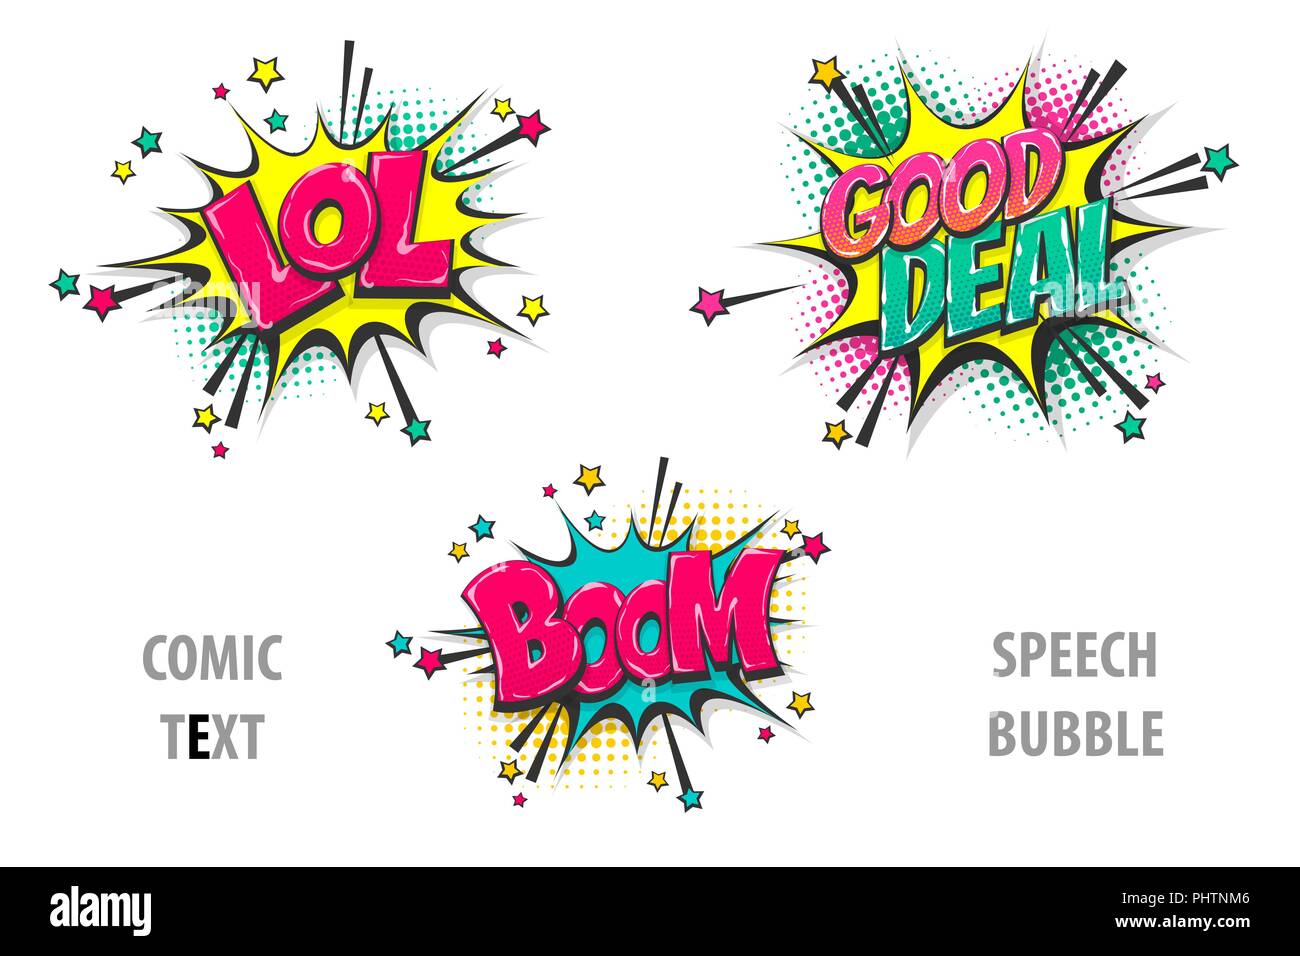 Définir le texte de la bande dessinée bulle lol, boom Illustration de Vecteur